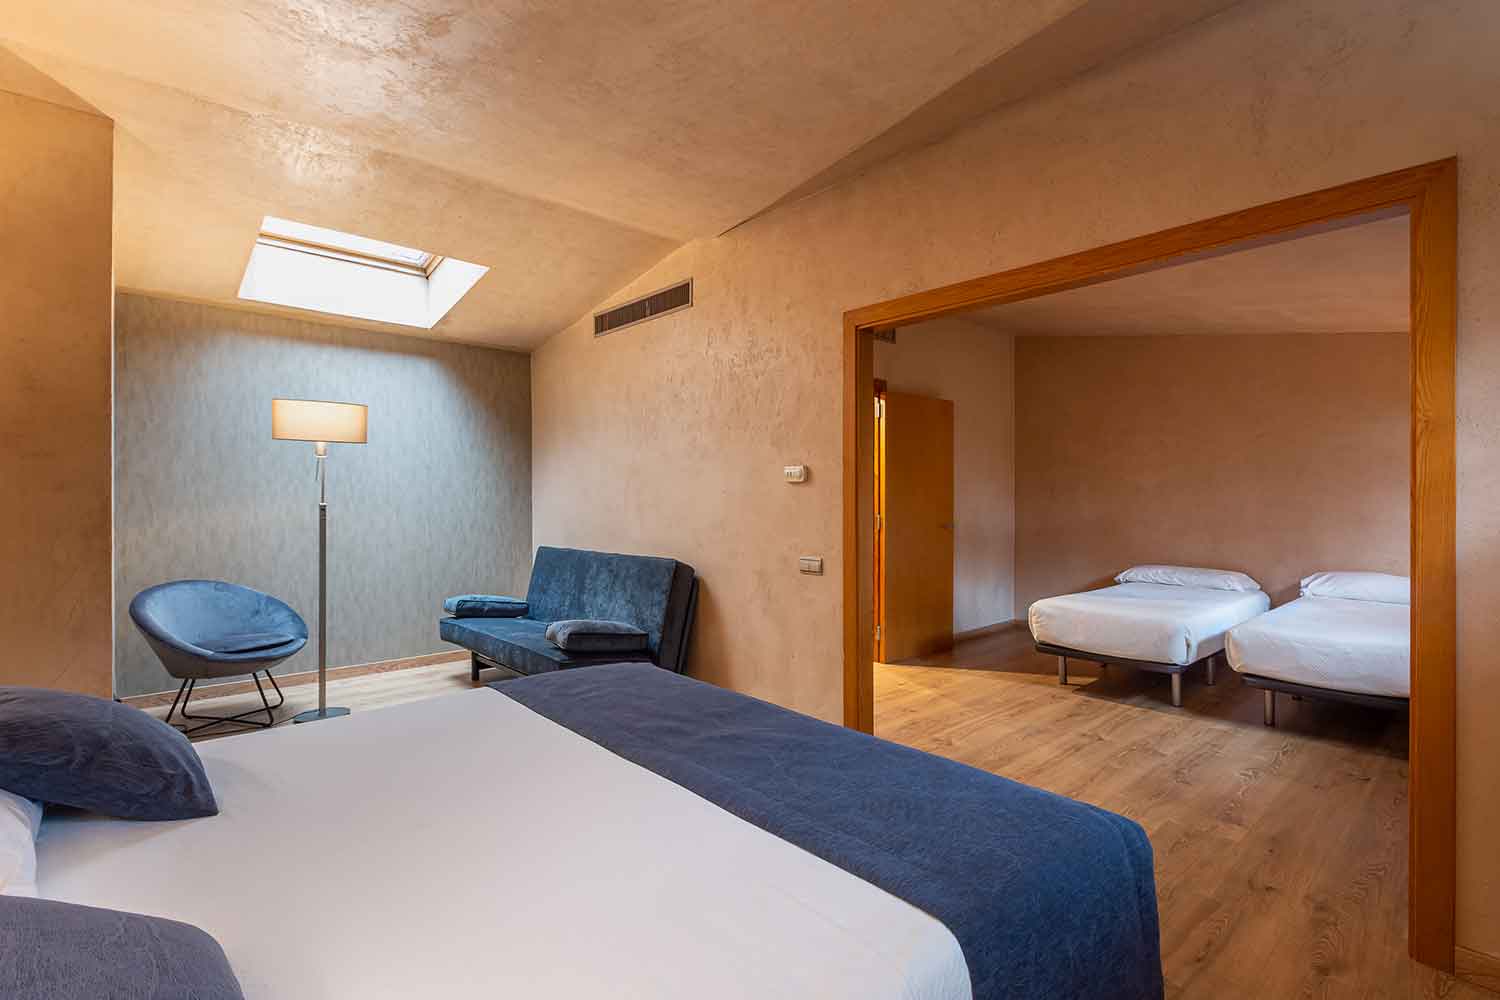 Habitació-àtic-doble-familiar-Hotel-Xalet-del-golf-cerdanya